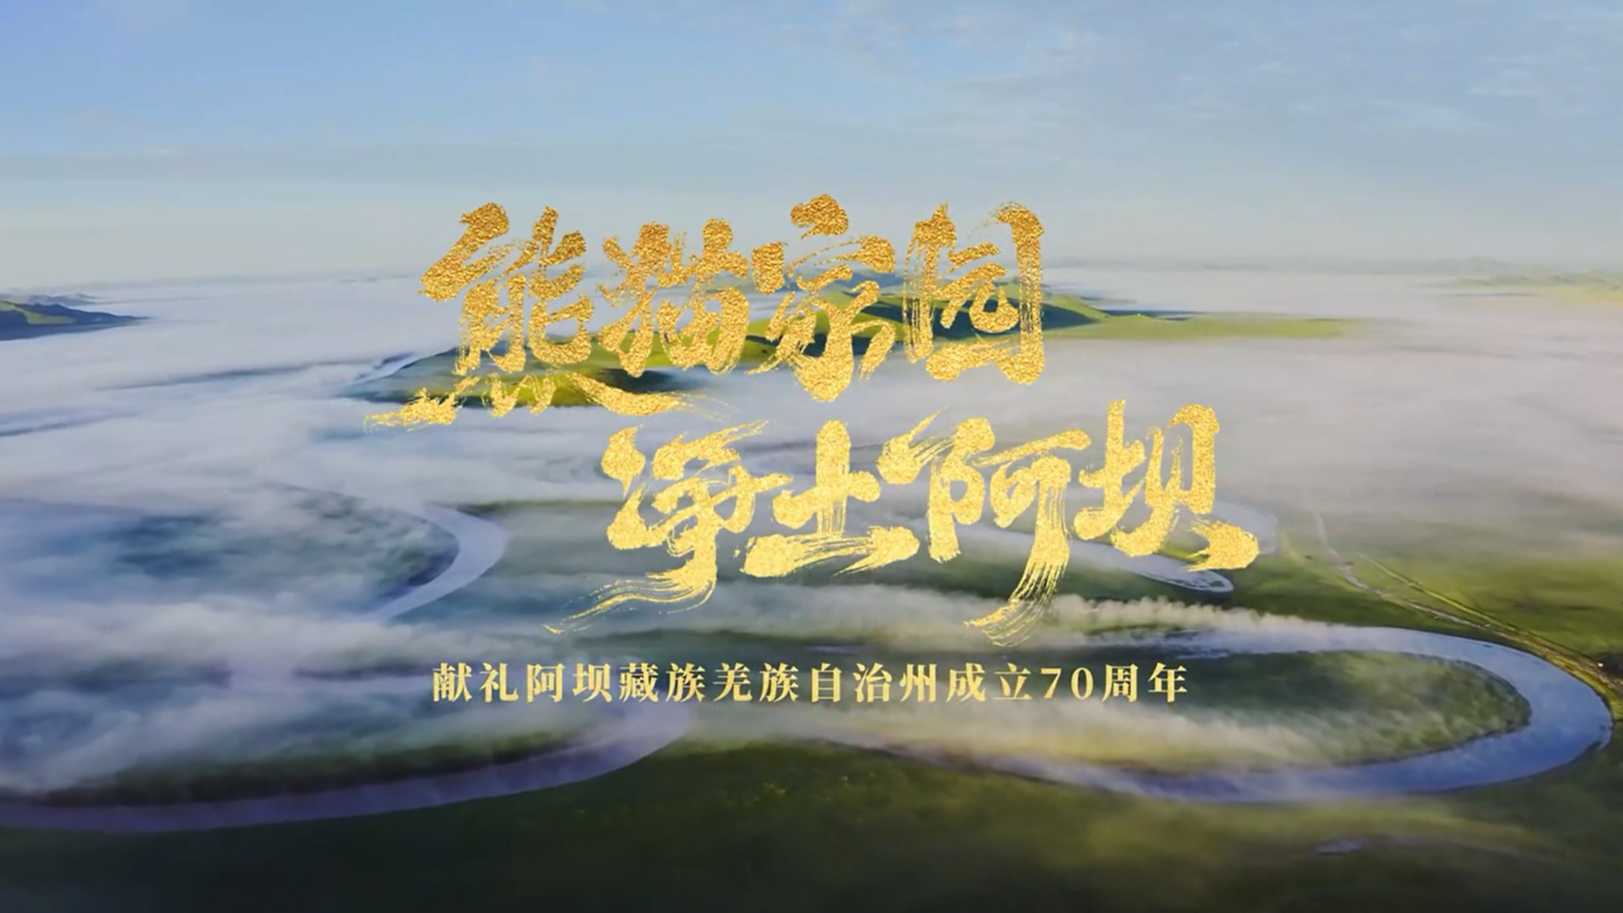 阿坝藏族羌族自治州成立70周年形象宣传片《熊猫家园 ·净土阿坝》 梵曲配音